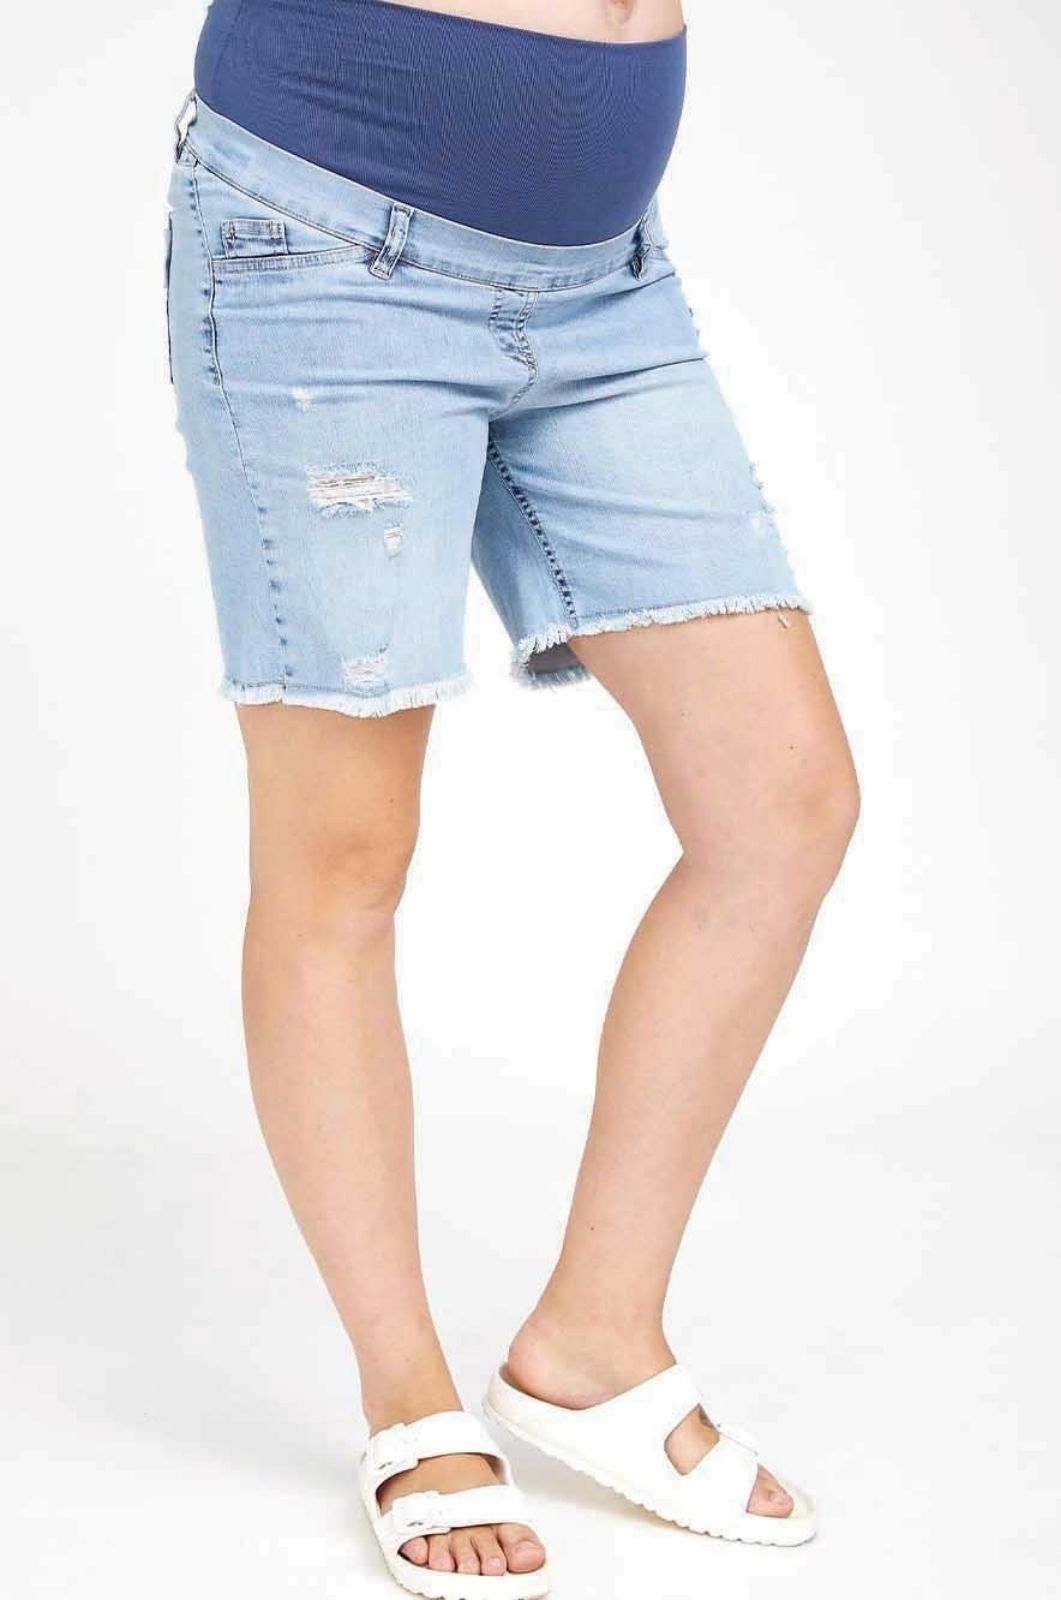  ג'ינס להריון קרעים קצר כחול בהיר של אבישג ארבל